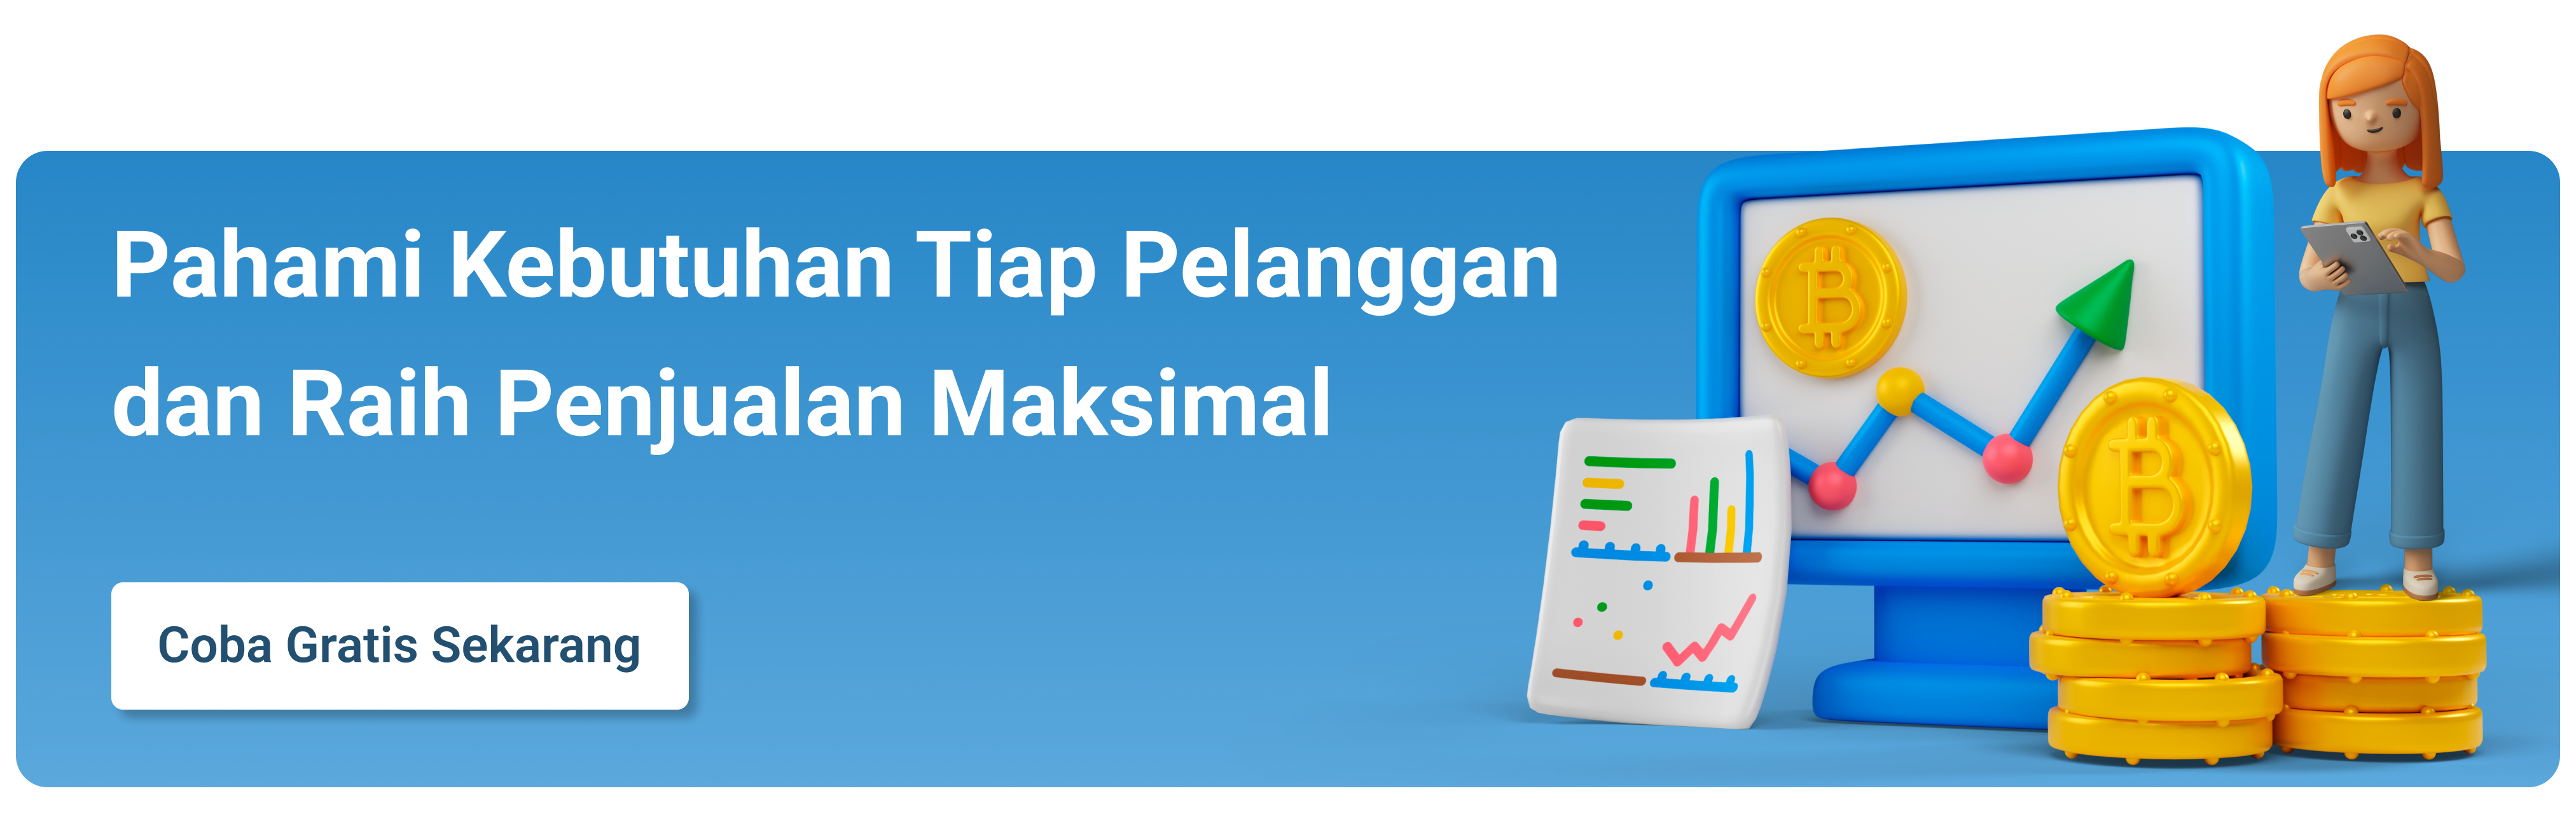 Barantum Software dan Aplikasi CRM Terbaik di Indonesia